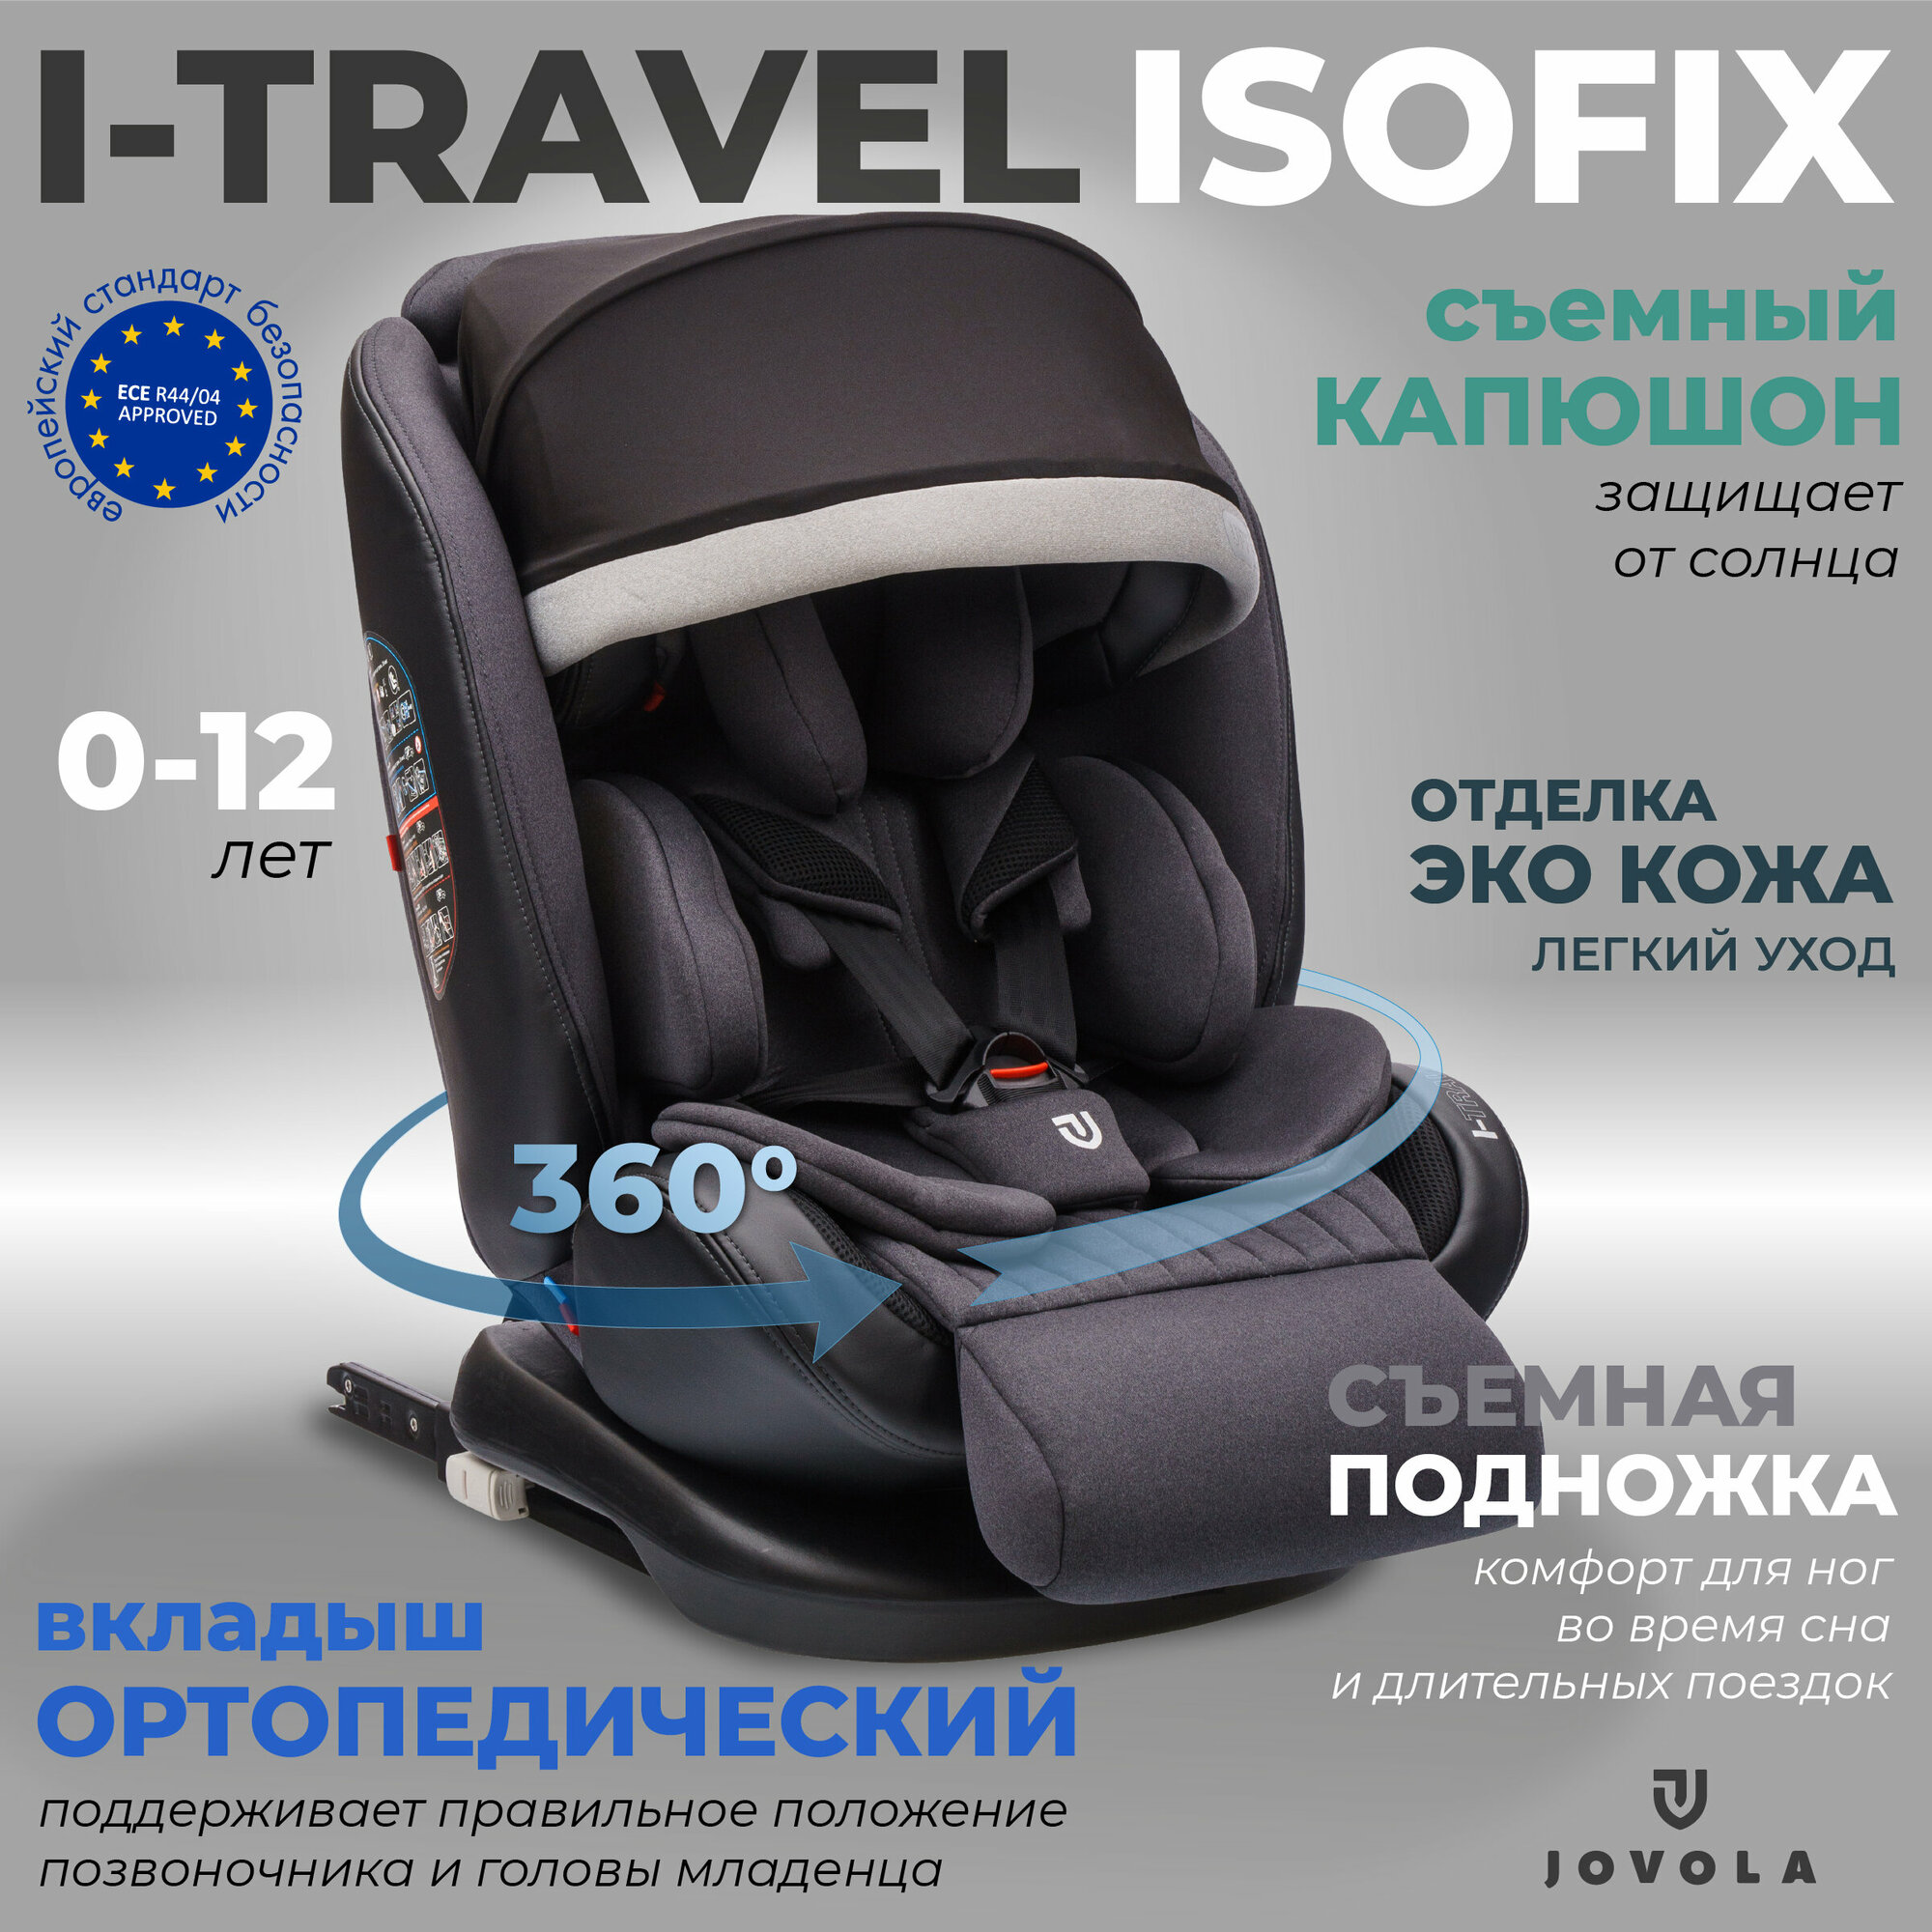 Автокресло Jovola I-Travel Isofix растущее 0-36 кг гр. 0123 черный